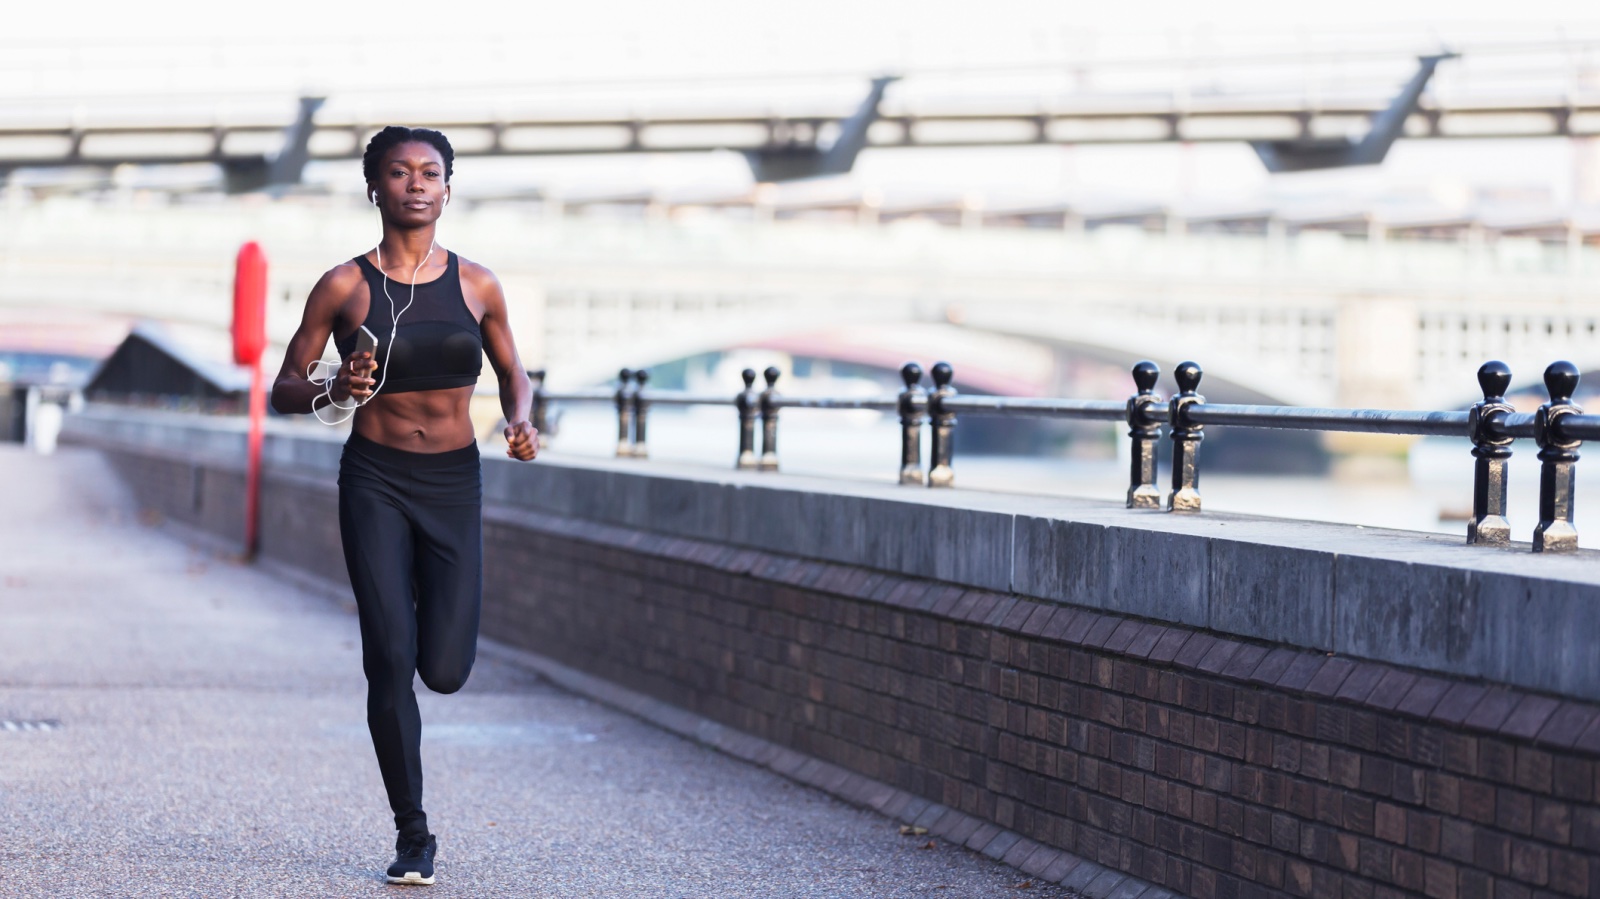 Как пробежать 5 км быстрее: на этом снимке спортсменка бегает по берегу Темзы рано утром, слушая музыку на своем смартфоне или плеере.